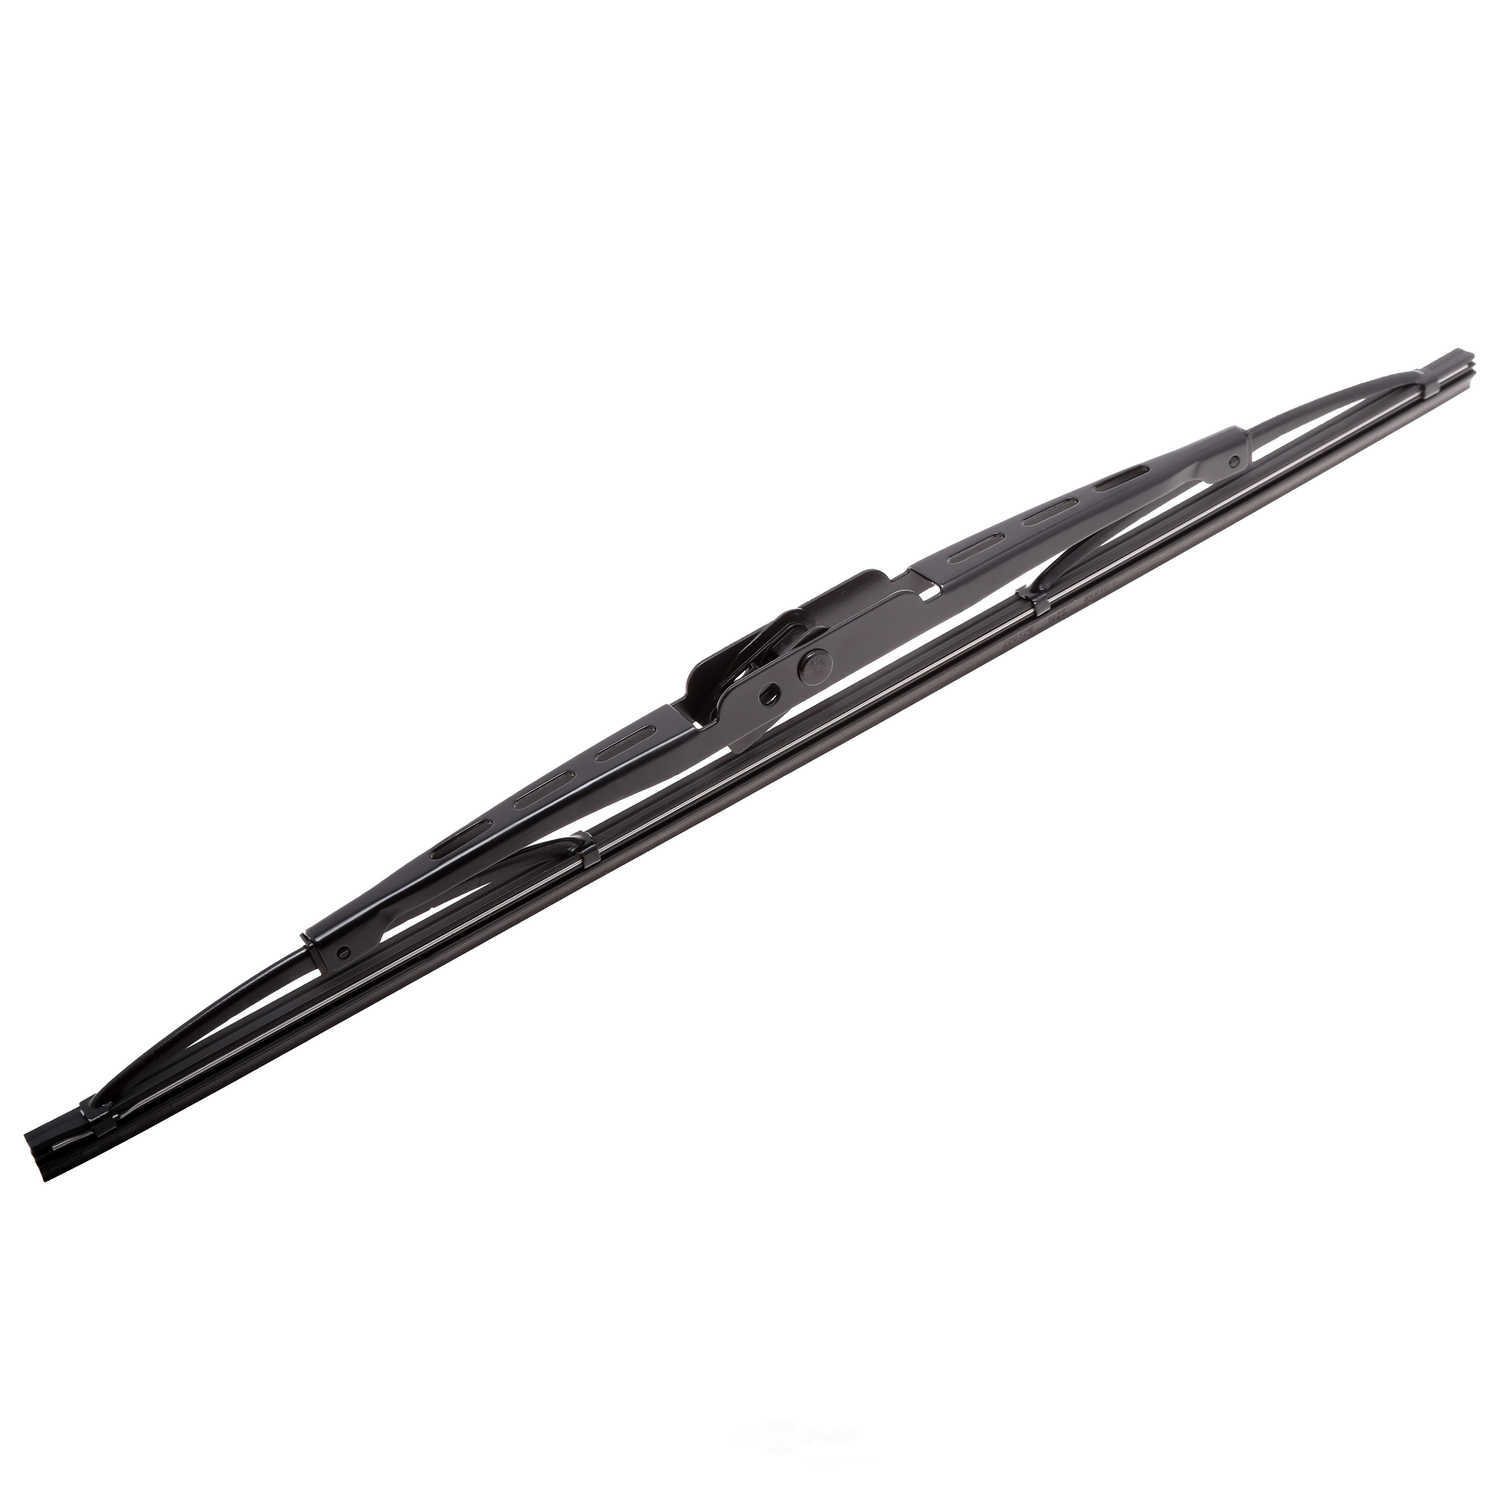 ANCO WIPER PRODUCTS - ANCO 97-Series Wiper Blade - ANC 97-14